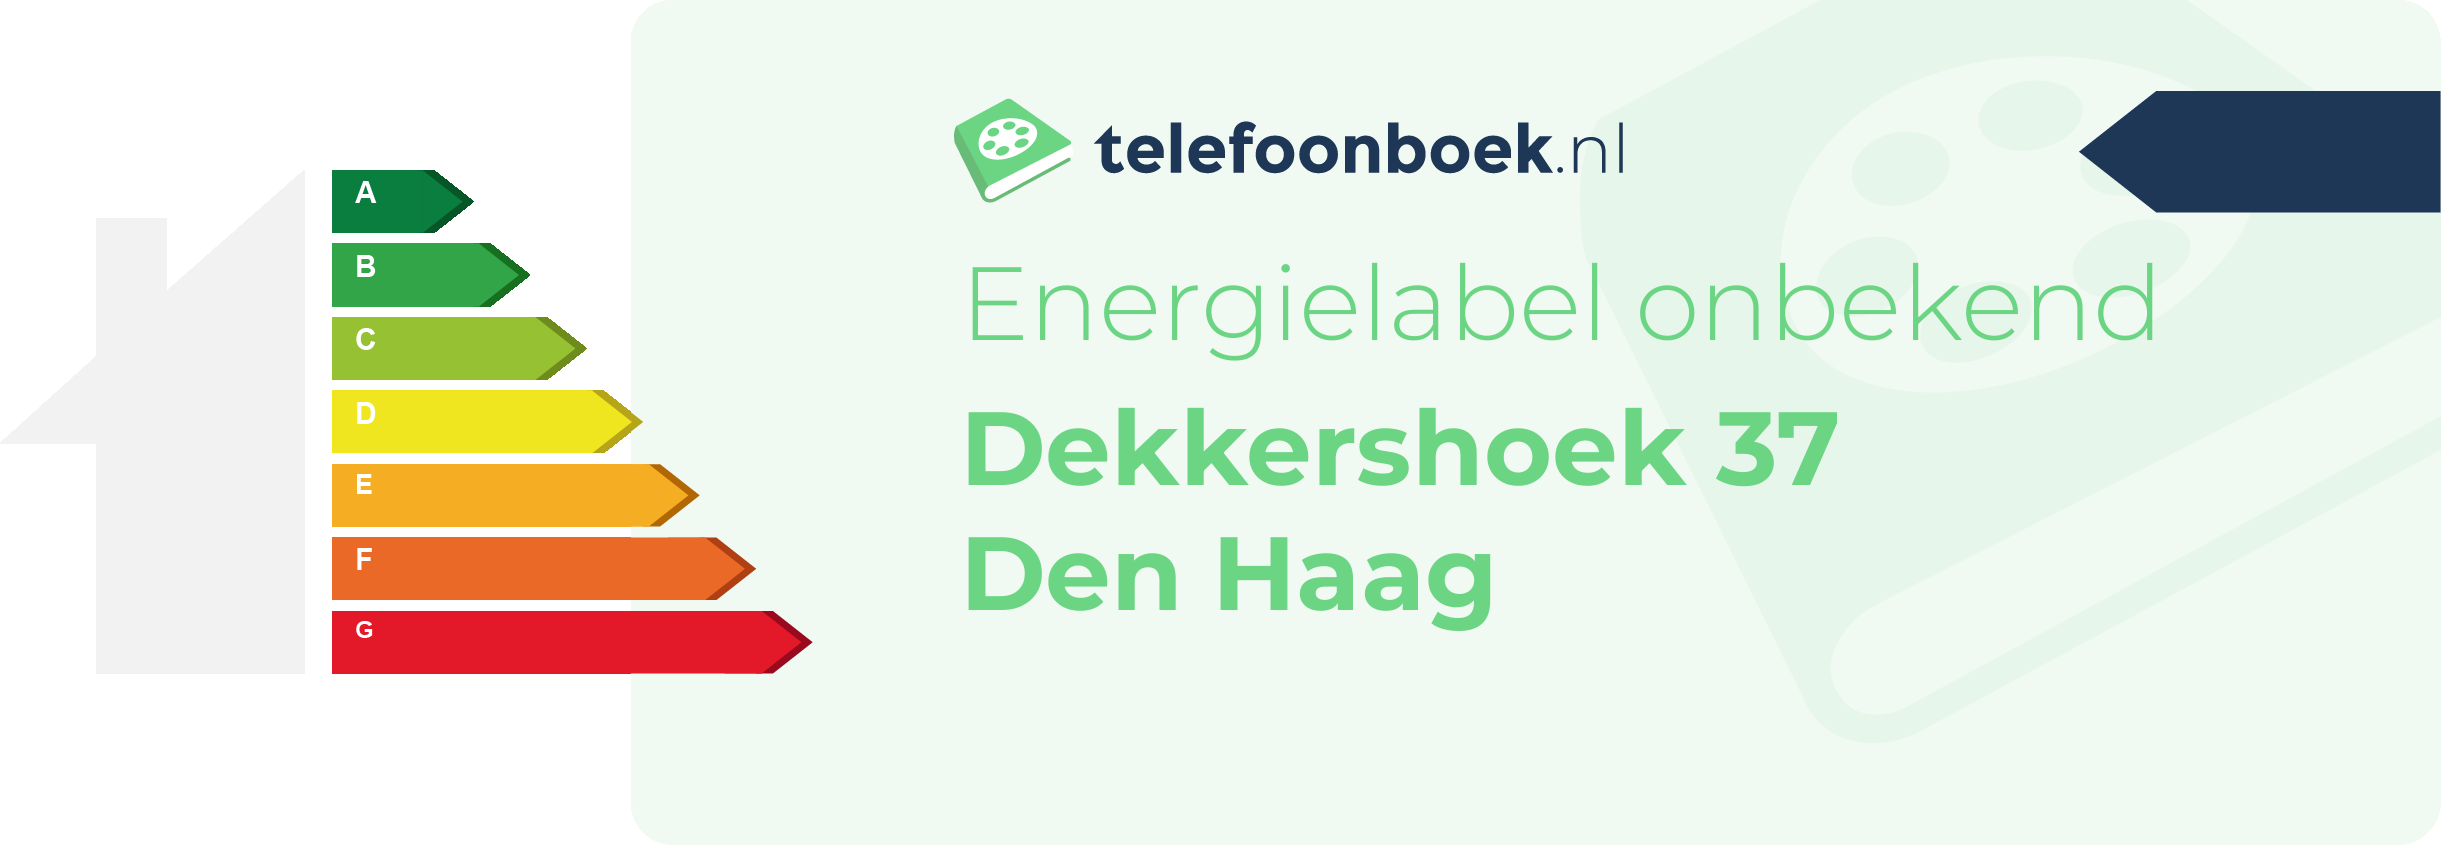 Energielabel Dekkershoek 37 Den Haag